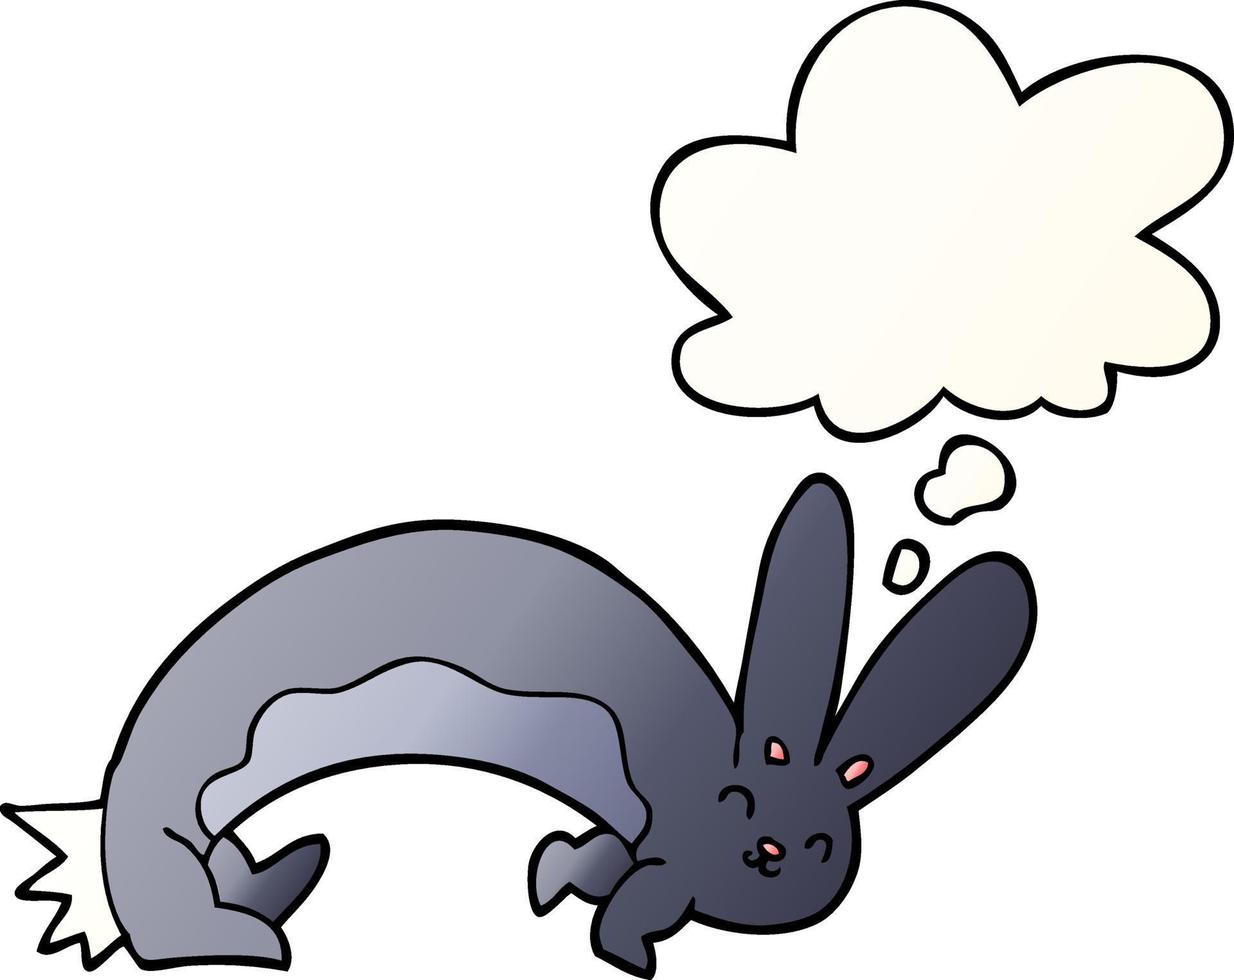 grappige cartoon konijn en gedachte bel in vloeiende verloopstijl vector